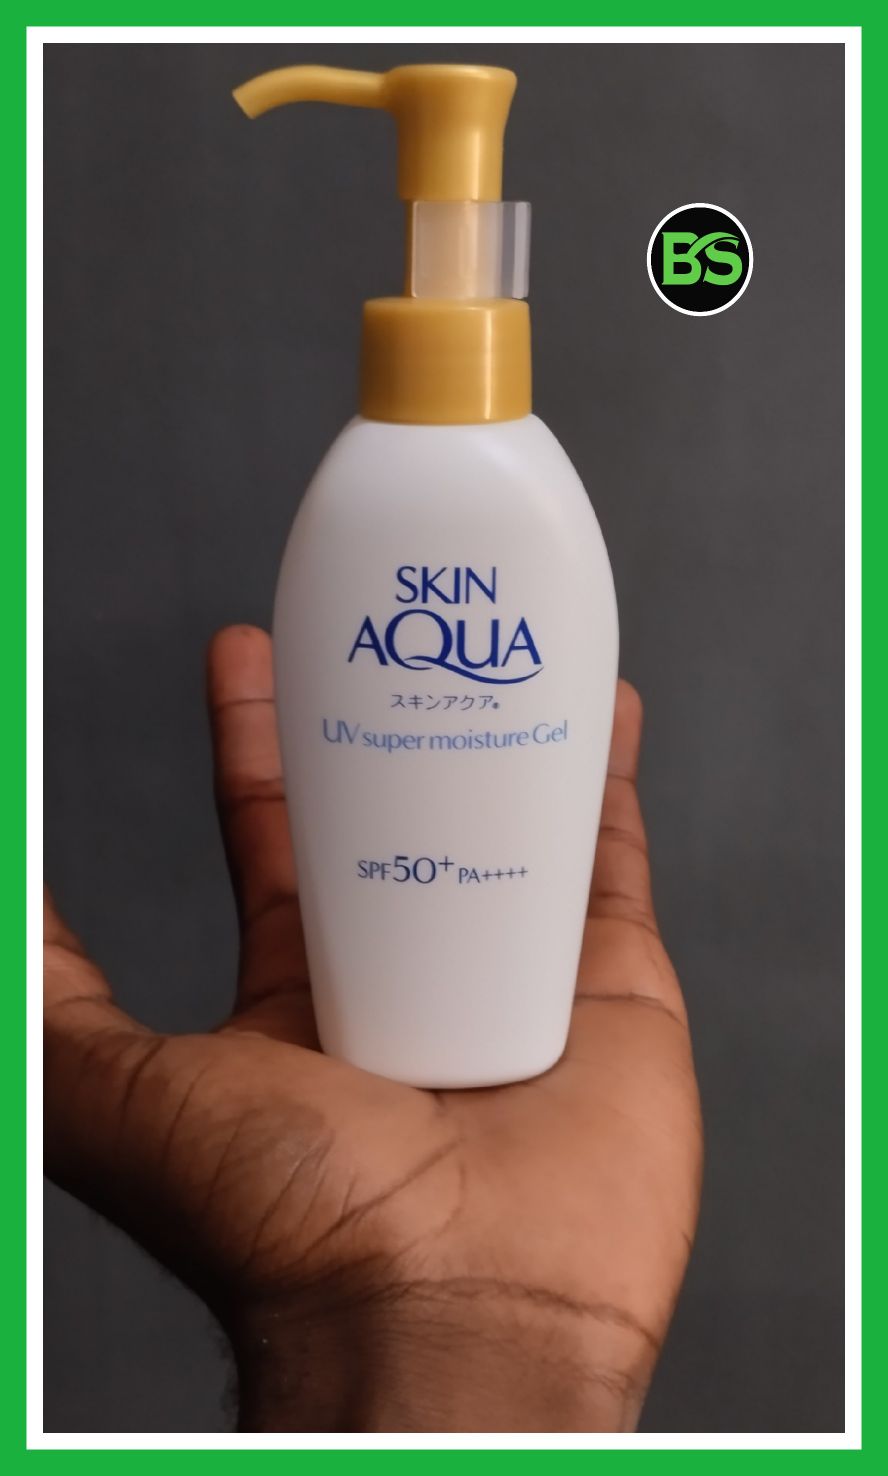 Skin Aqua UV Super Moisture Gel SPF 50+ 